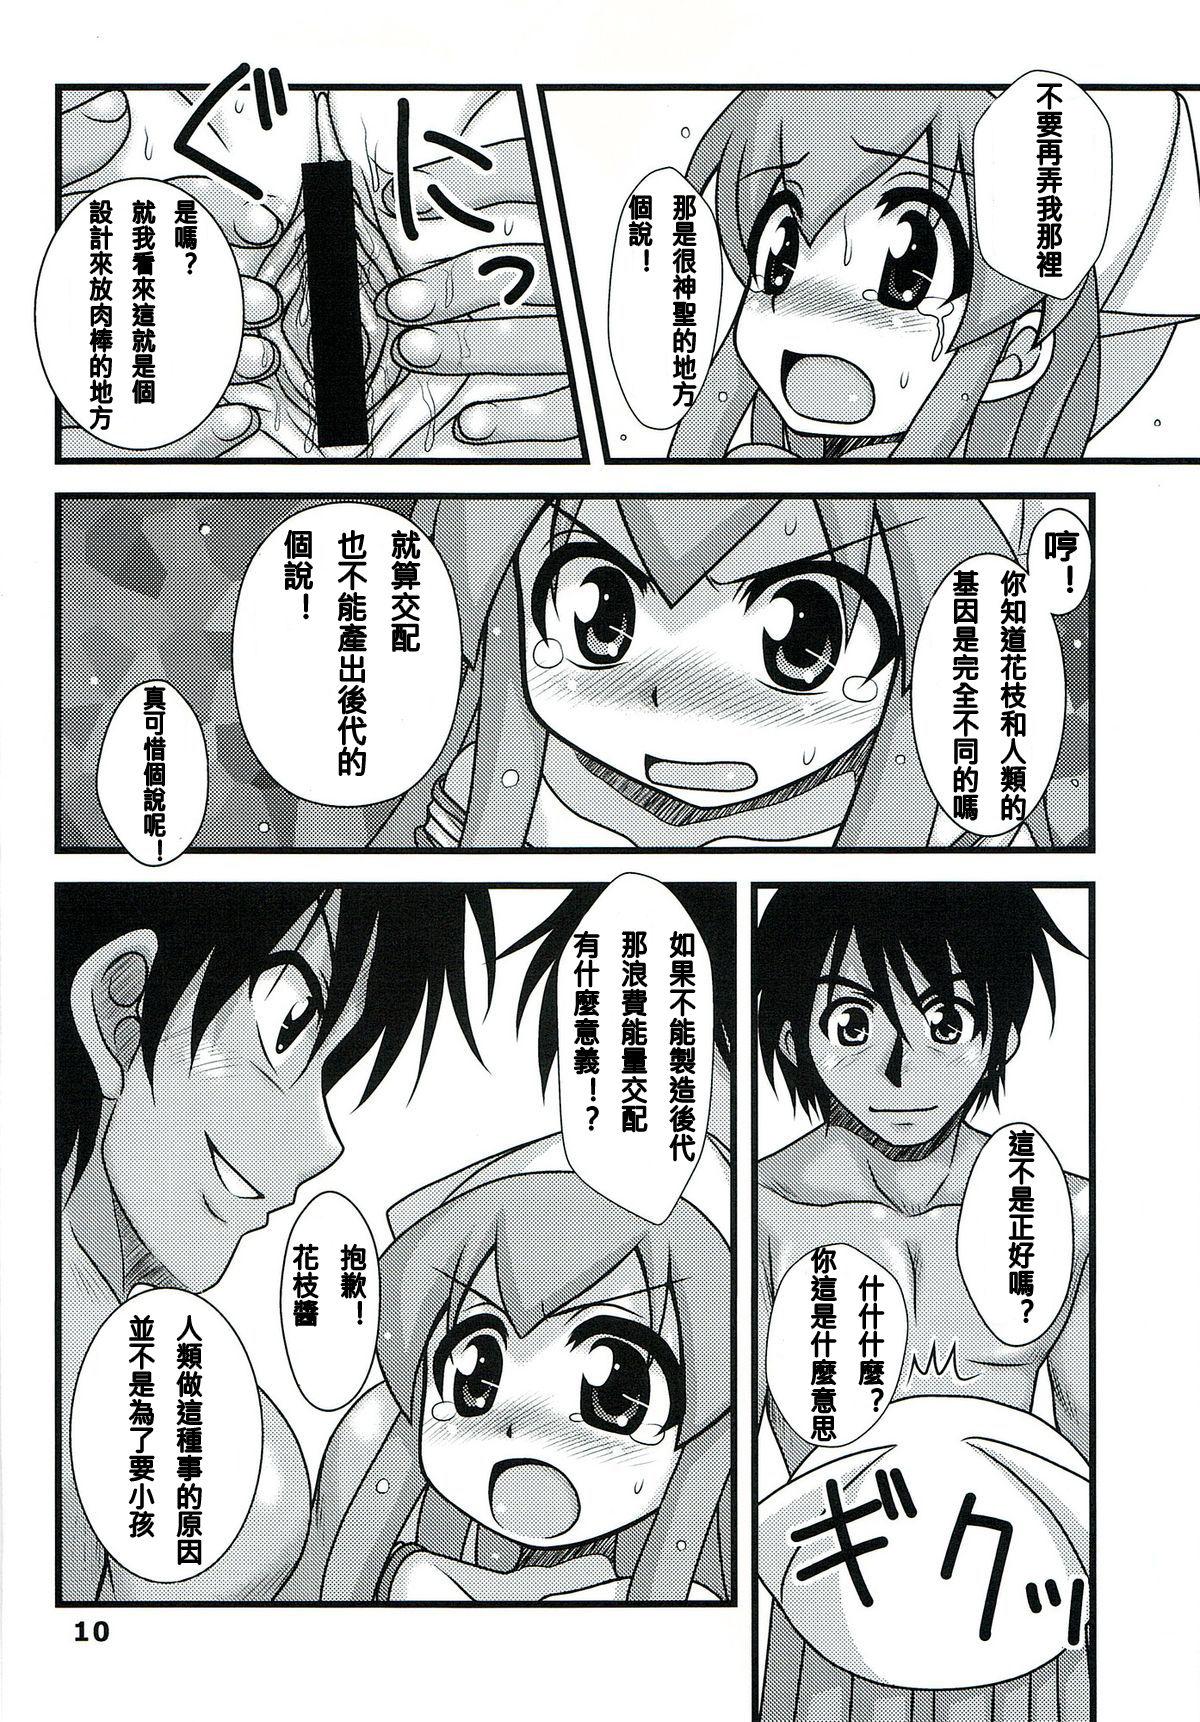 Brunet Ryoujoku! Ika Musume - Shinryaku ika musume | invasion squid girl Pussy - Page 10